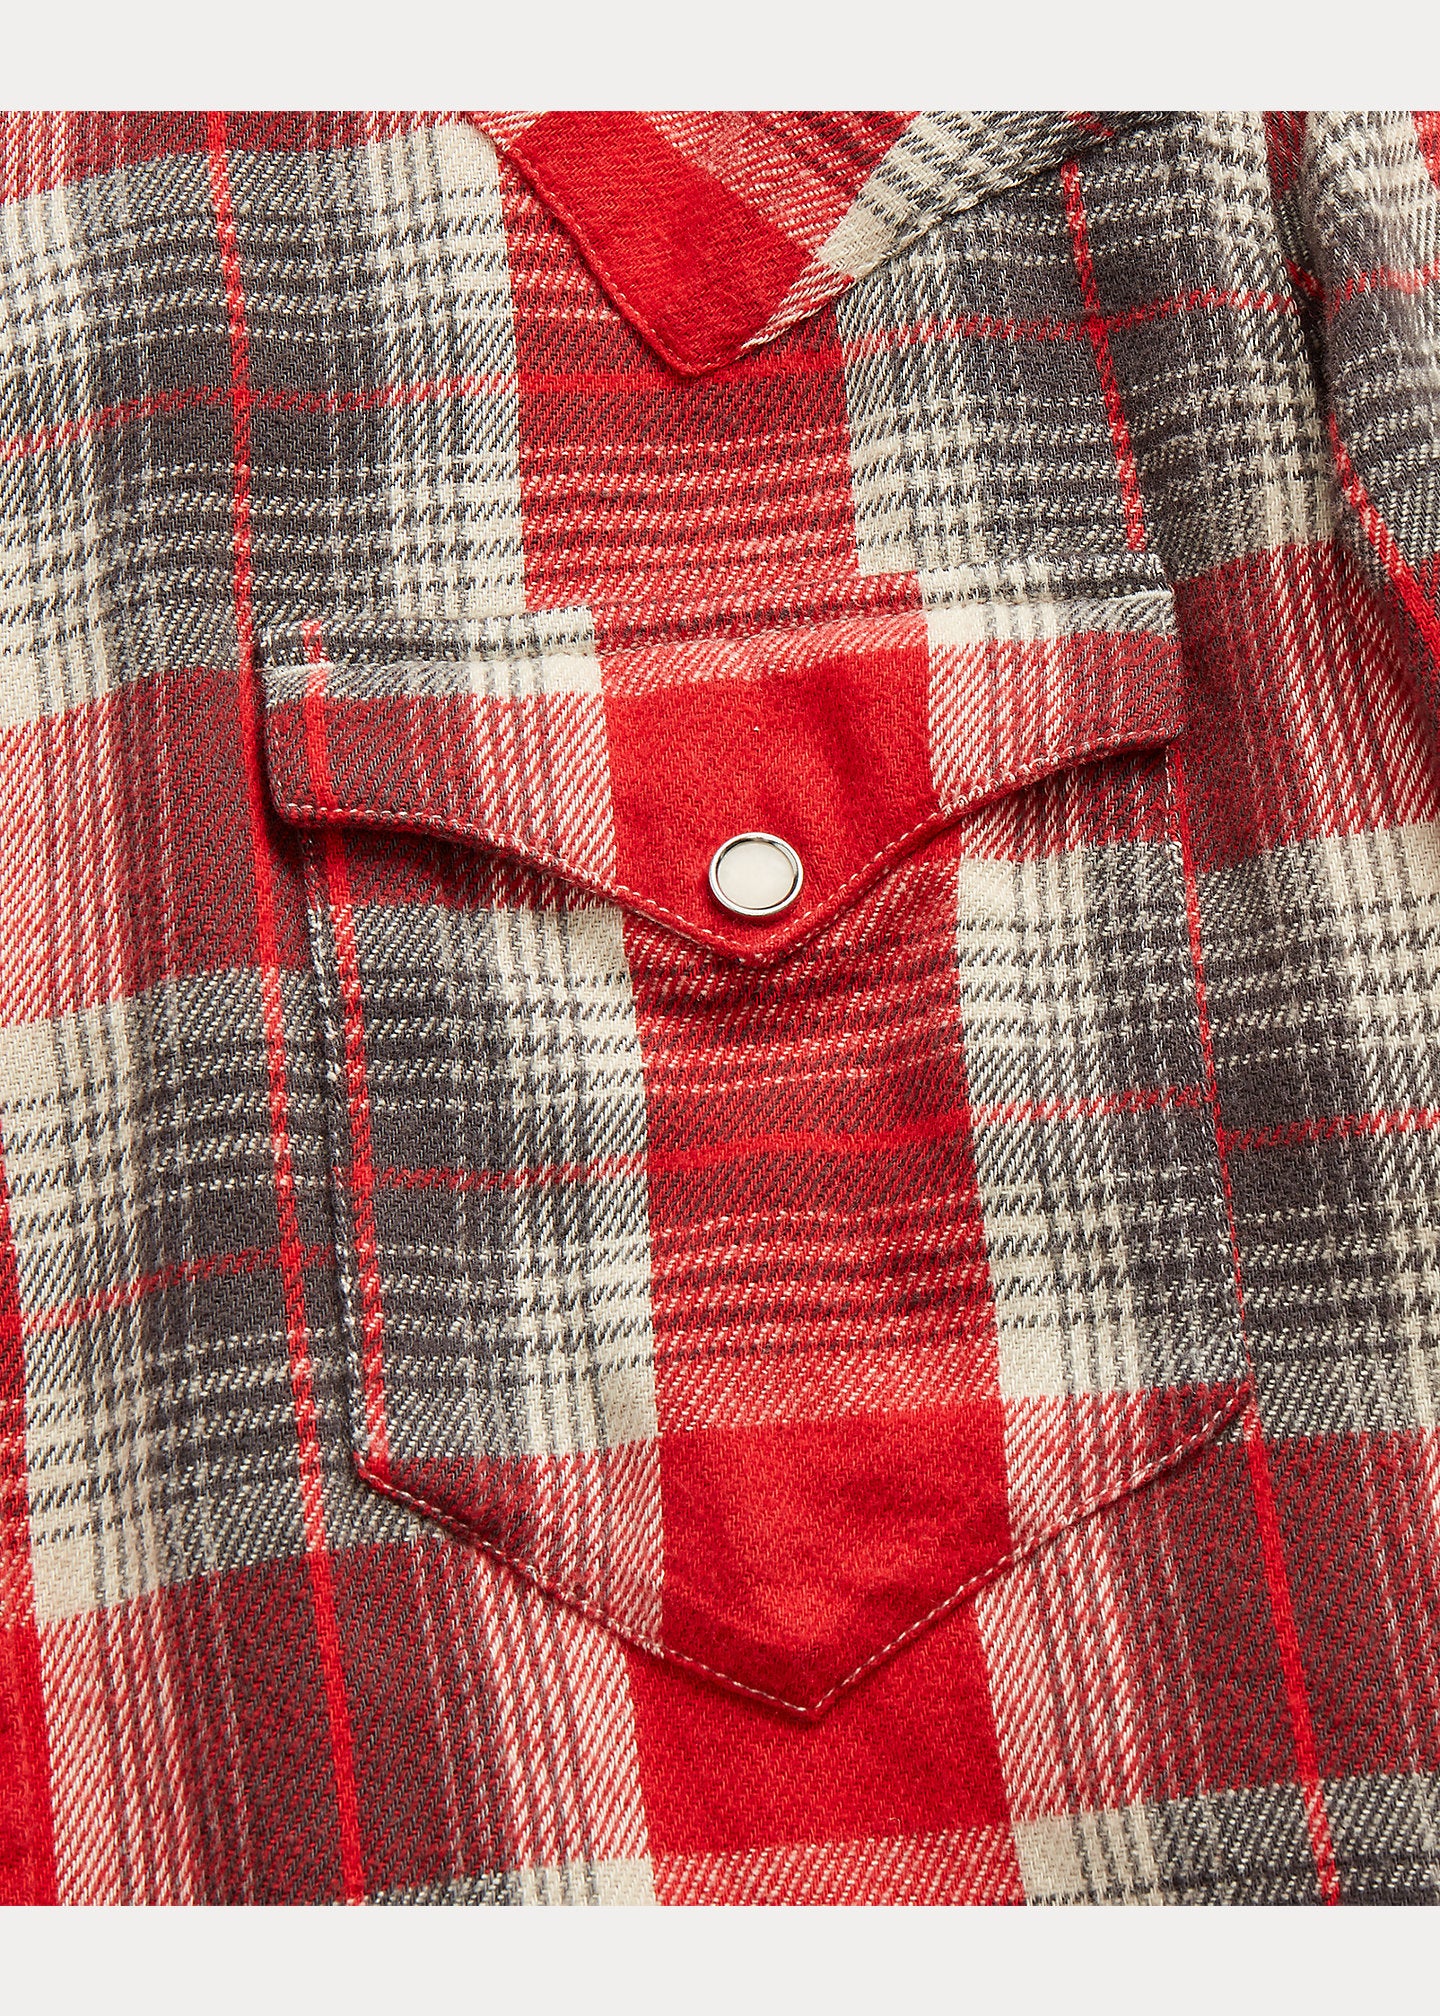 RRL Slim Fit Plaid Twill Western Shirt - Red/Grey